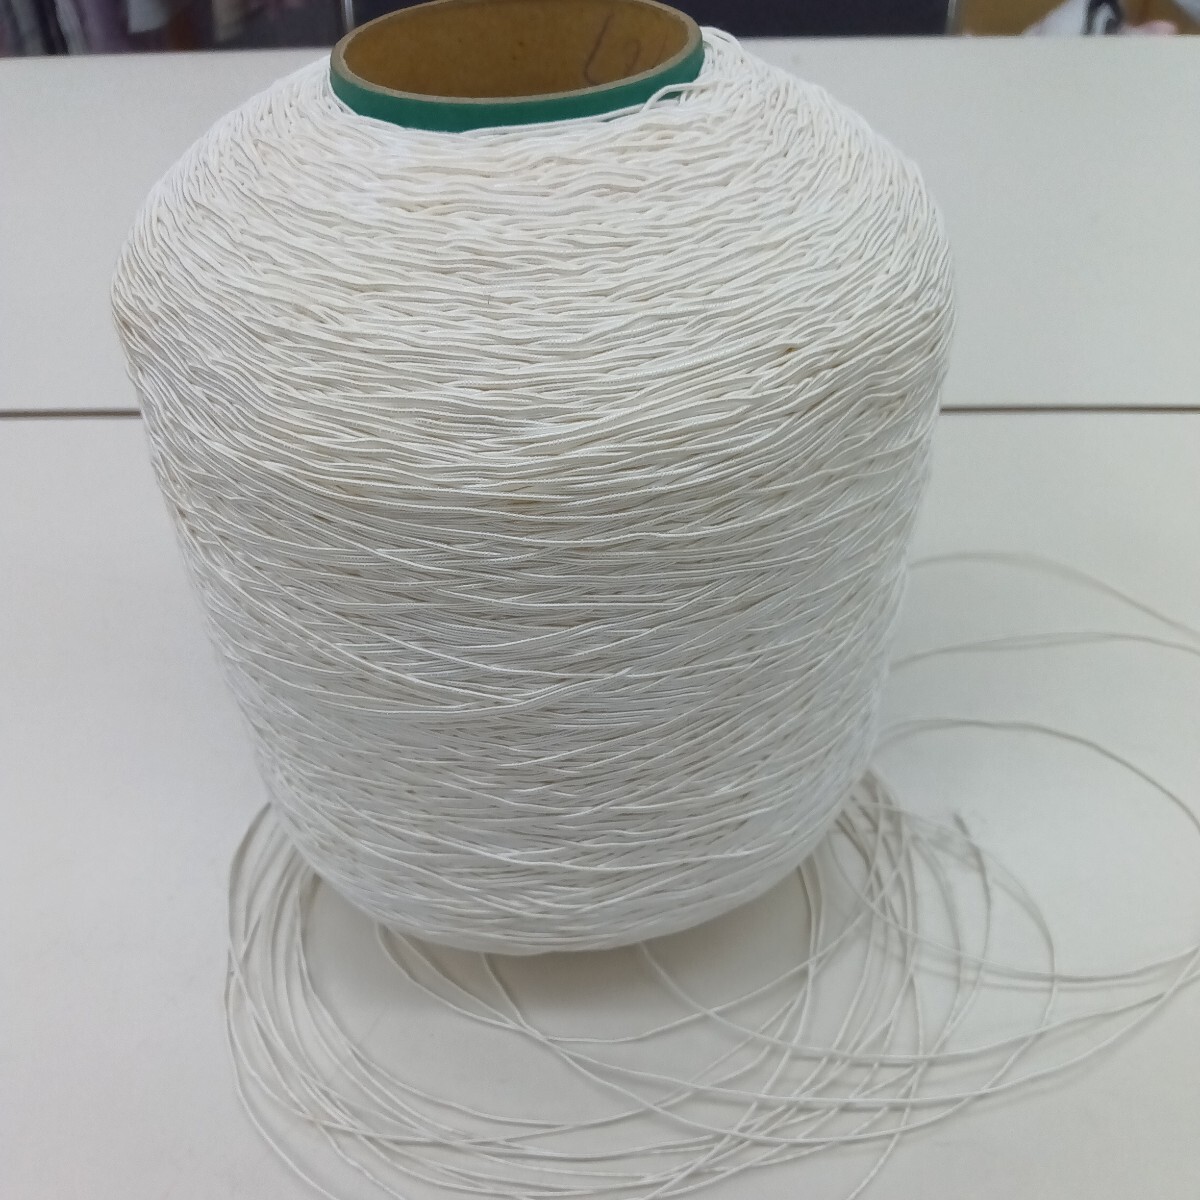 特殊コイルヤーン 約1kg 毛糸 ケイト シュシュ ピアス タッセル 手織り手編み 引き揃え糸 ファンシーヤーン アクセサリーの画像1